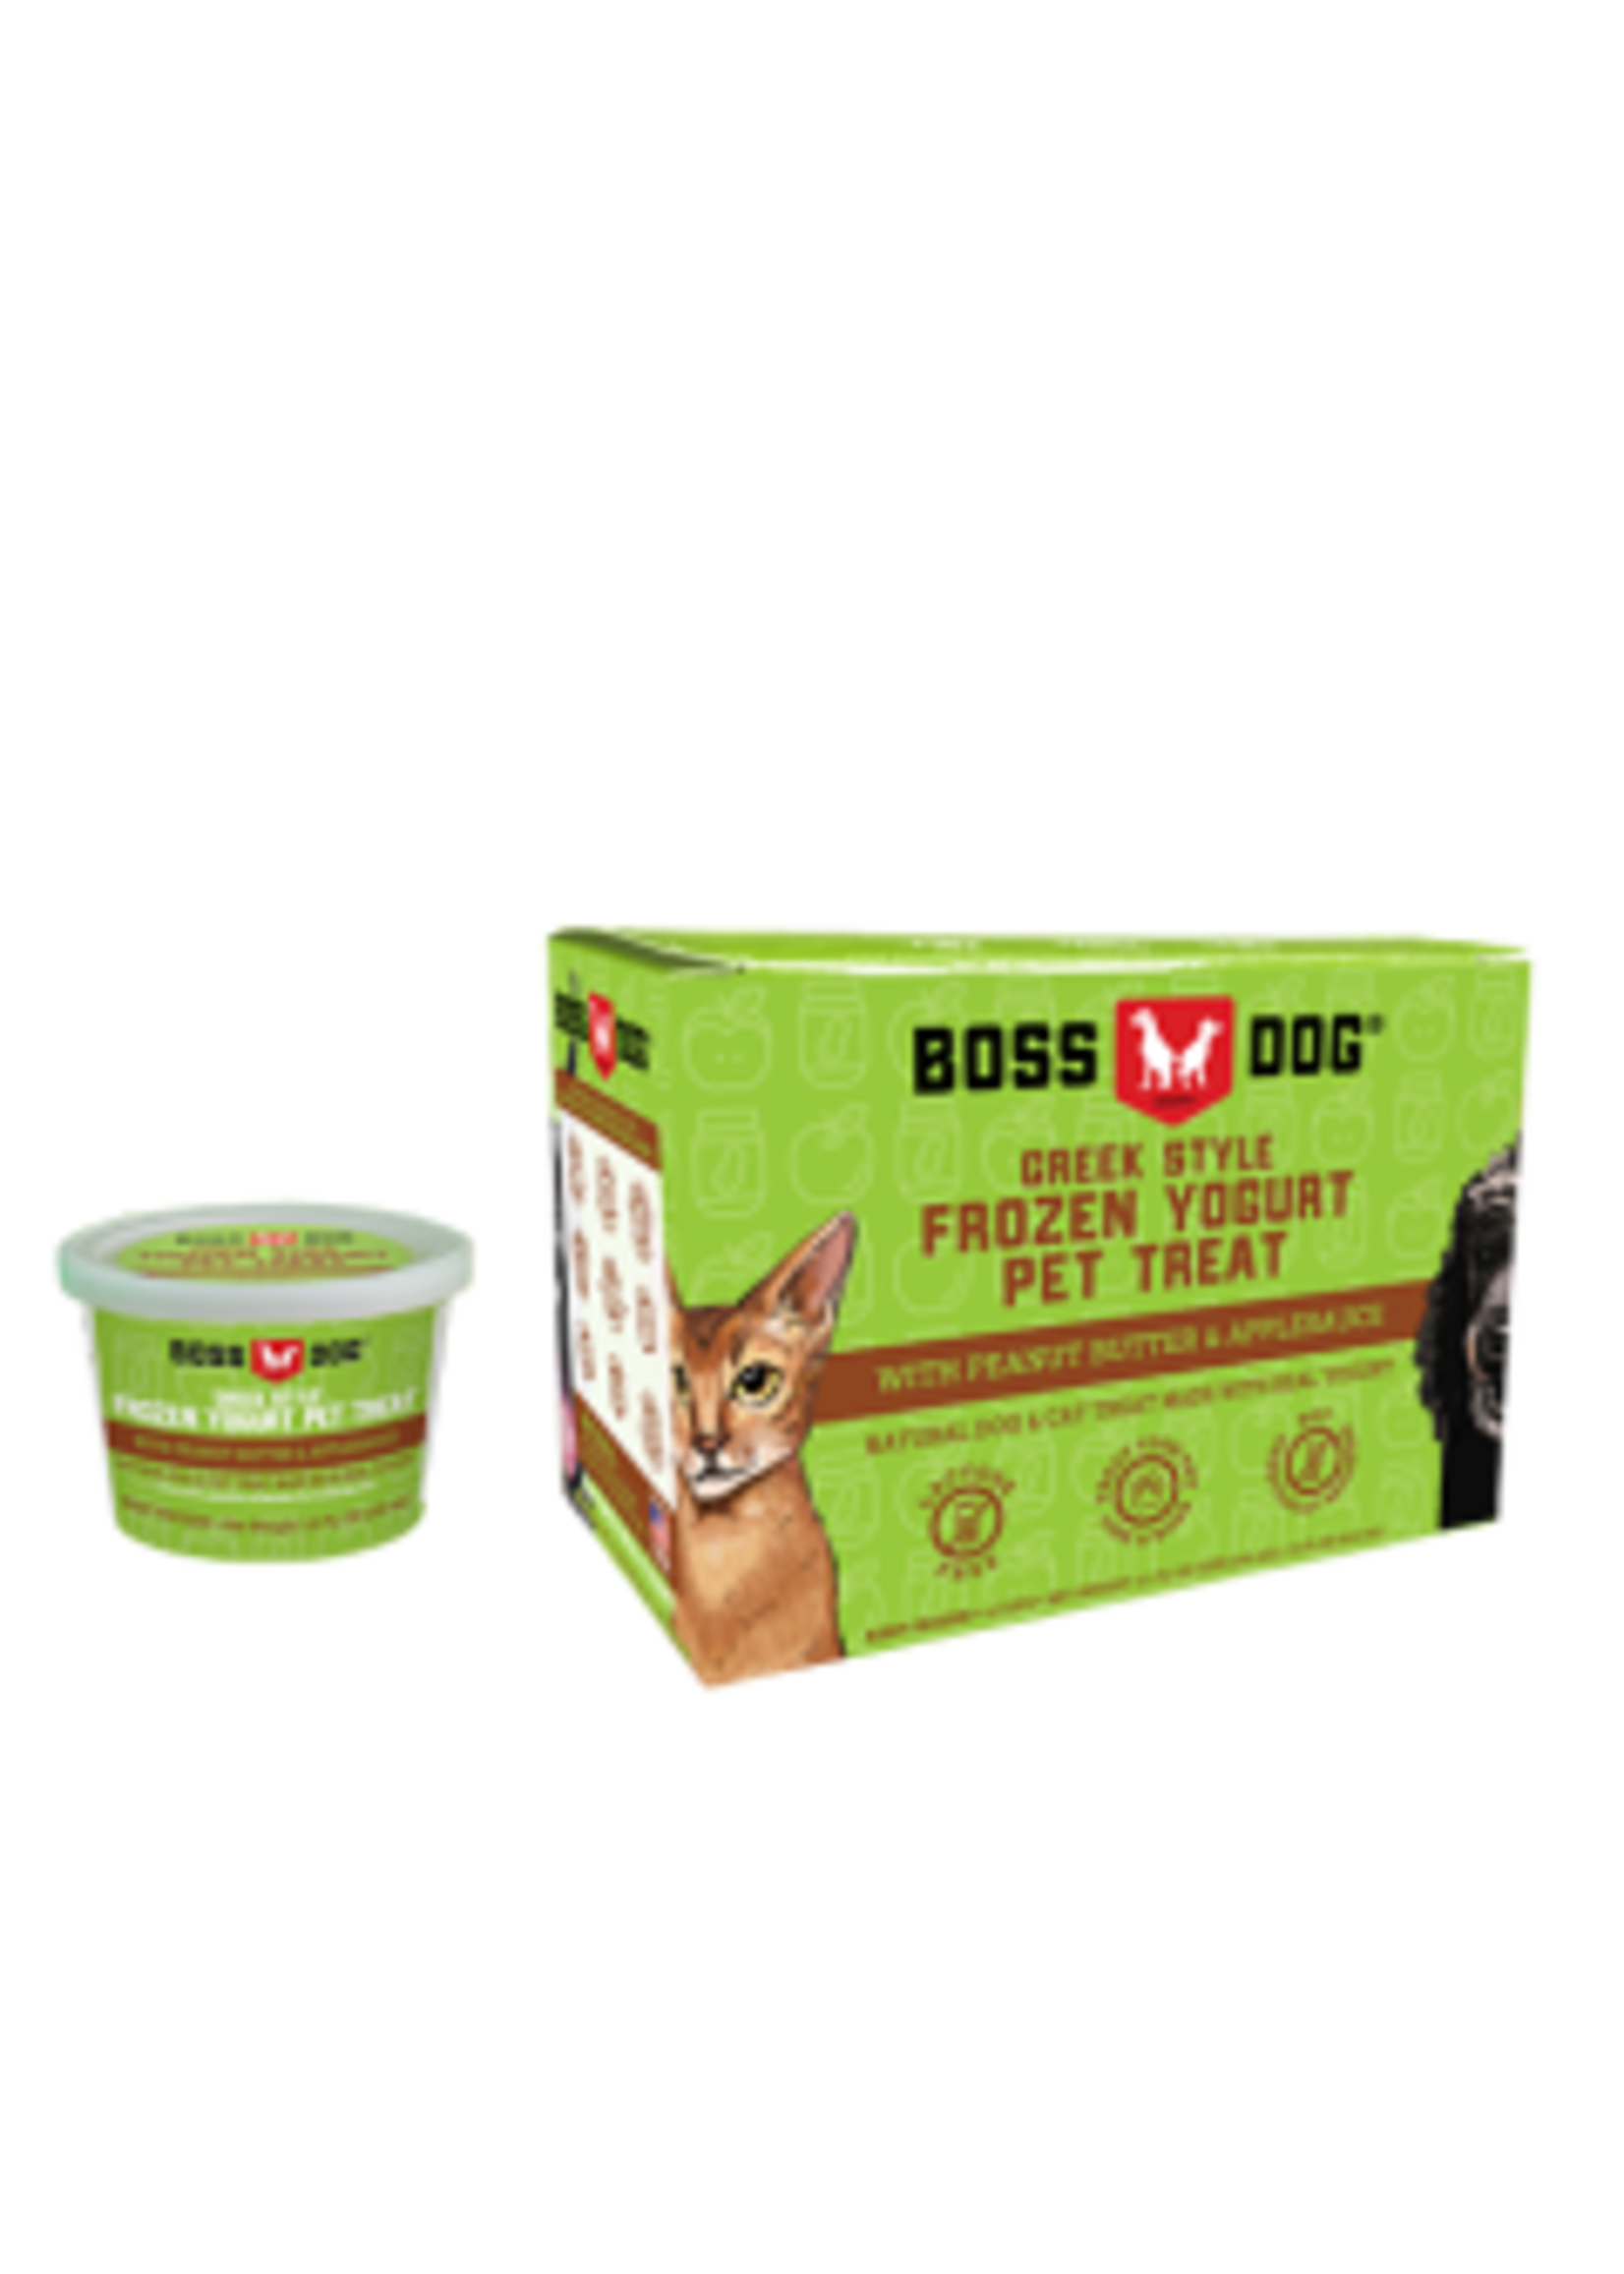 Boss Dog Boss Dog - Frozen Yogurt Peanut Butter & Apple Sauce 104ml